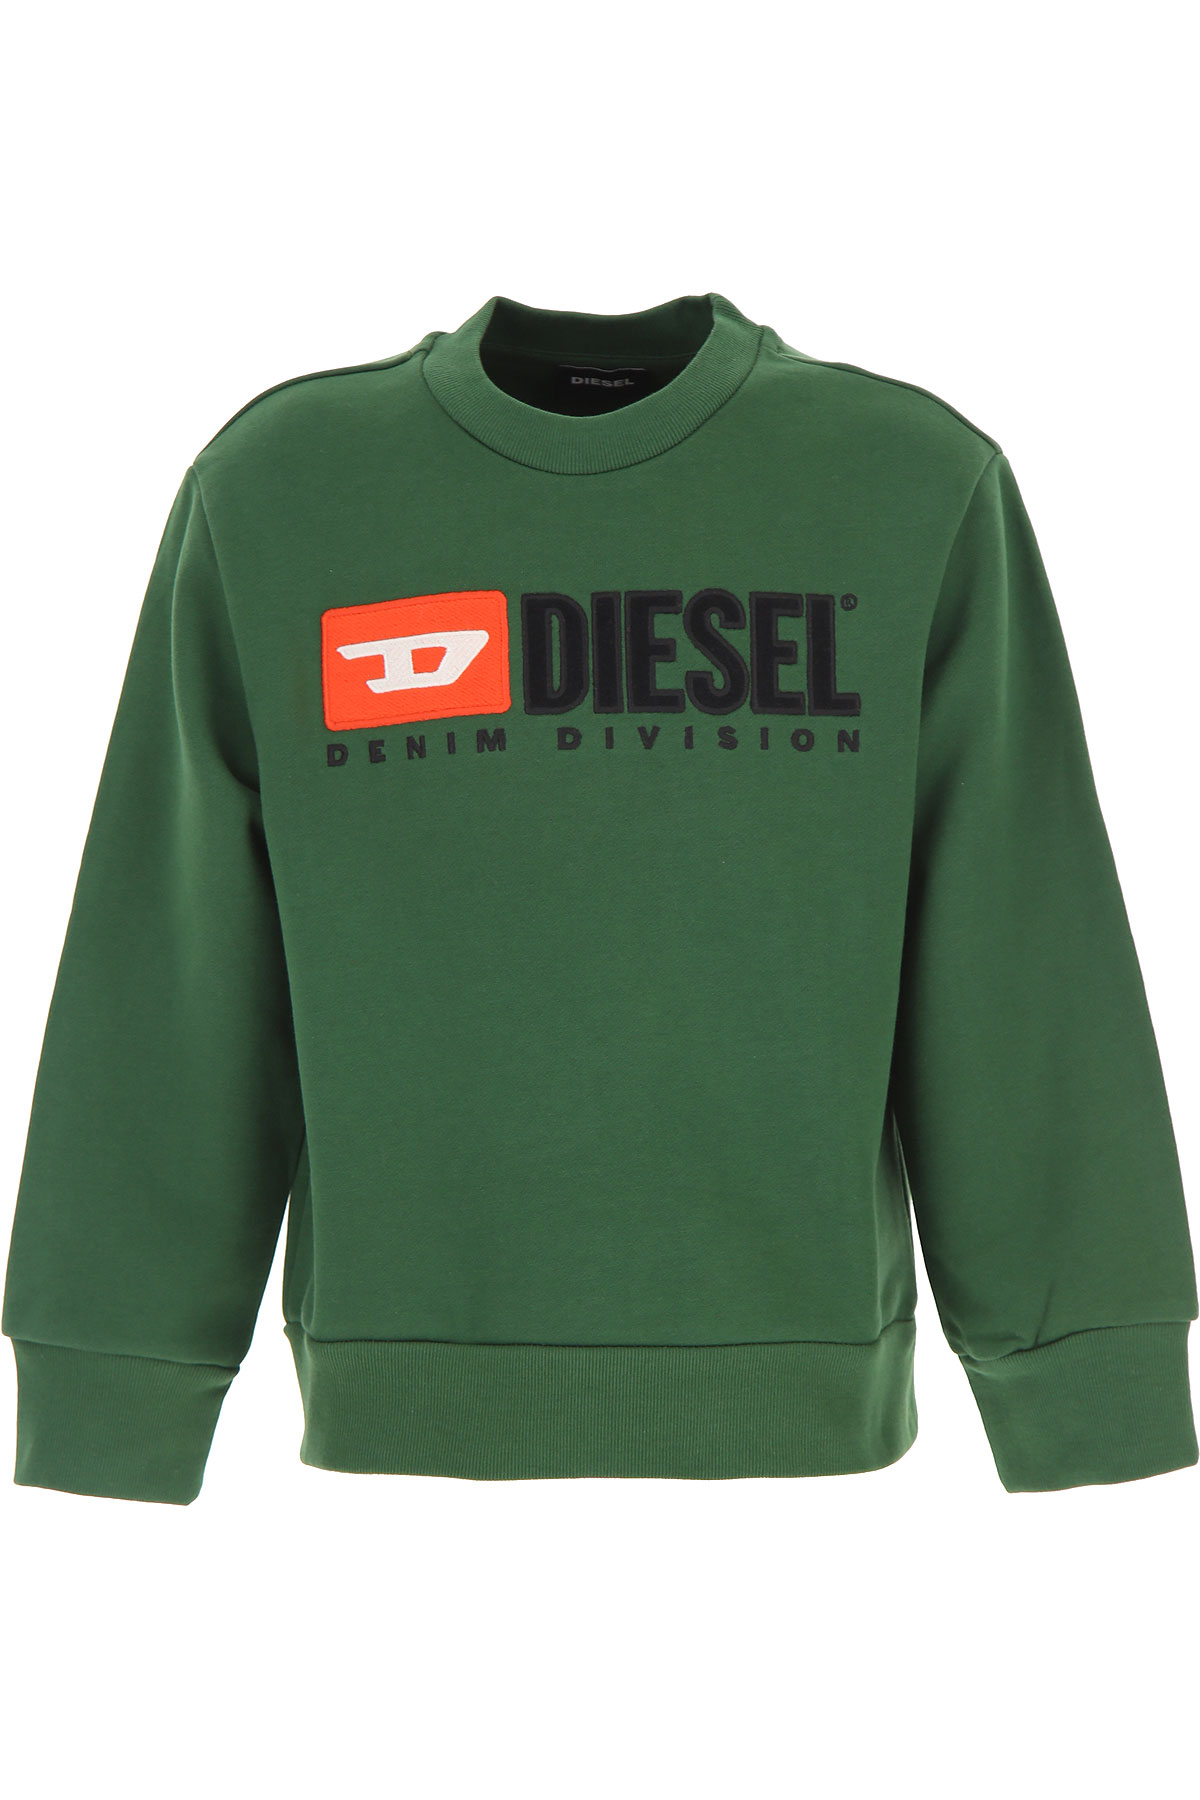 Diesel Kinder Sweatshirt & Kapuzenpullover für Jungen Günstig im Sale, Dunkelgrün, Baumwolle, 2017, 12Y 6Y